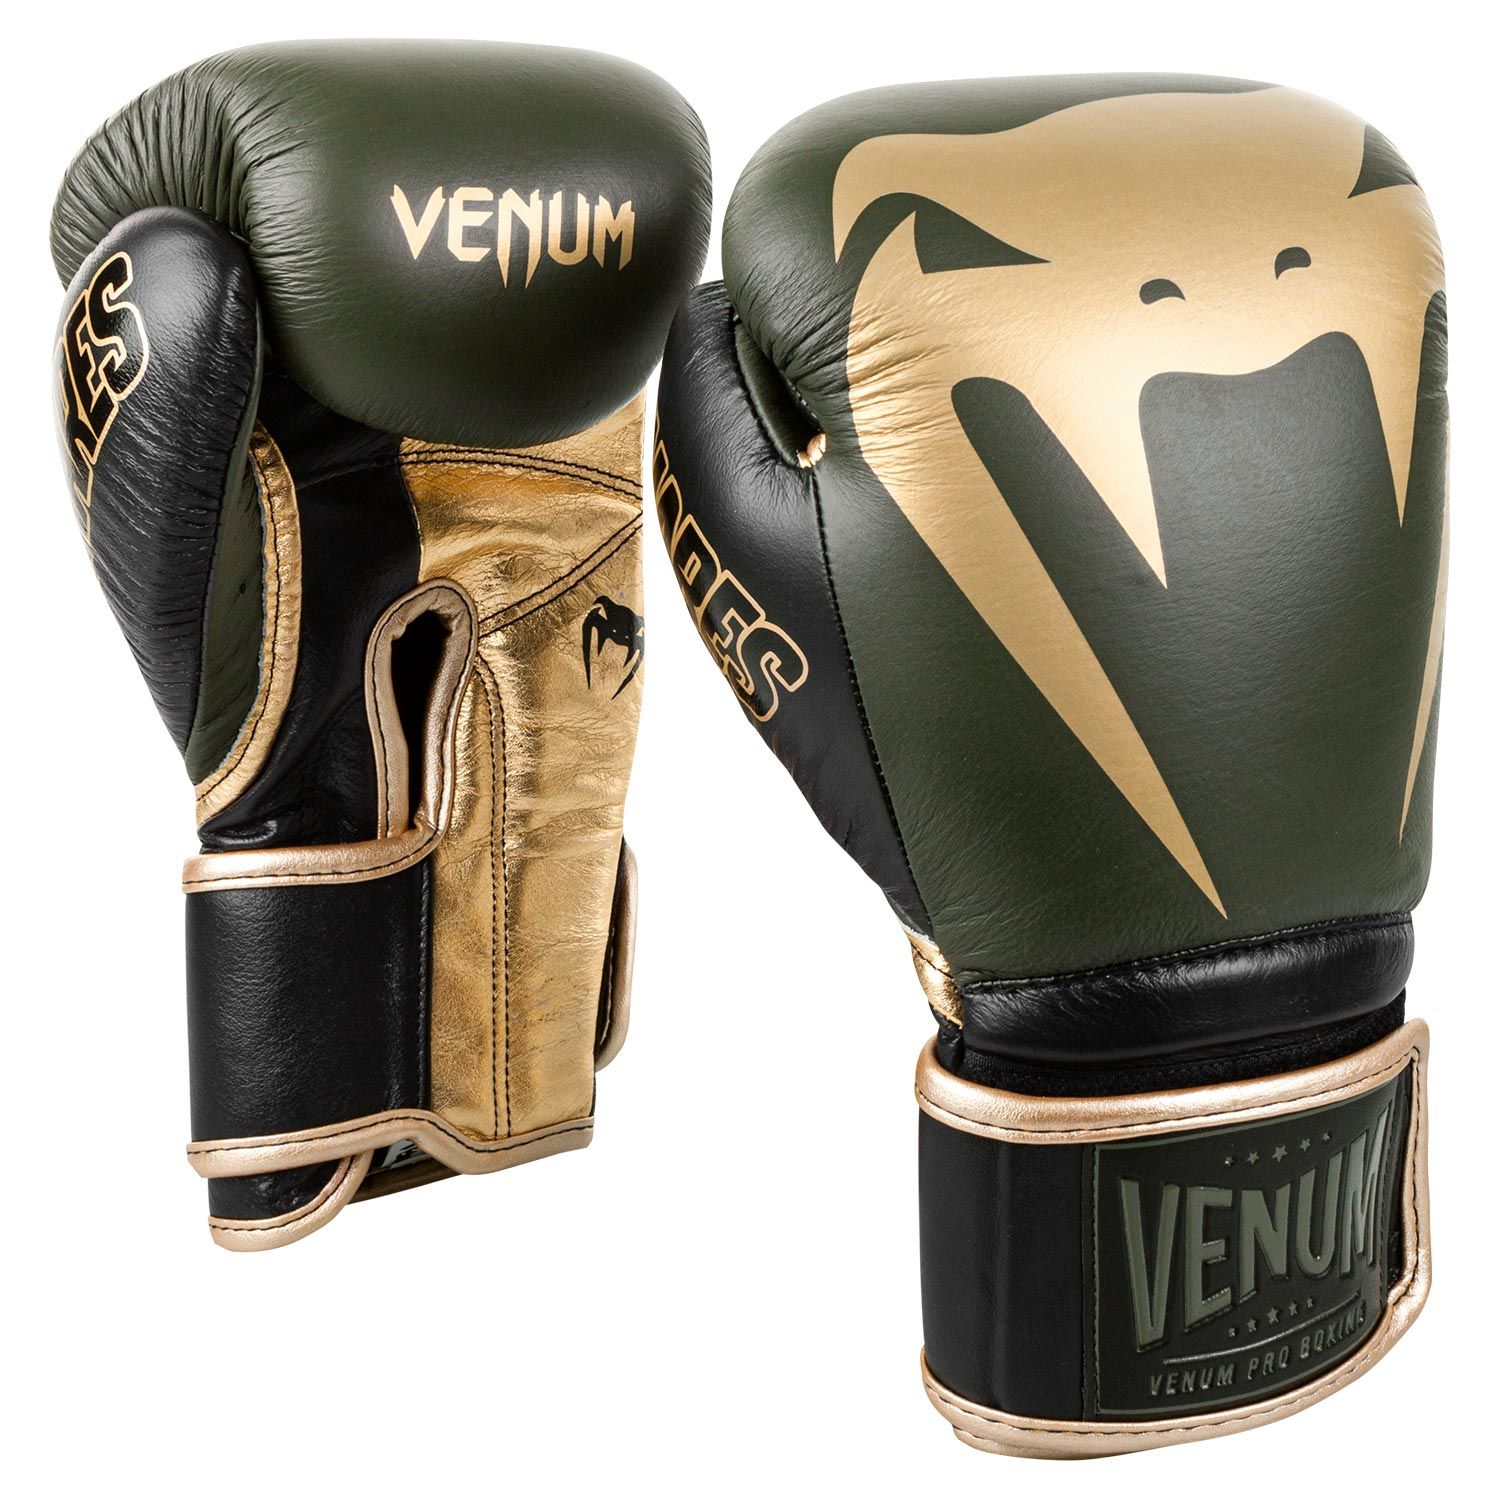 Gants de boxe Pro Venum Giant 2.0 Edition Linares - Velcro